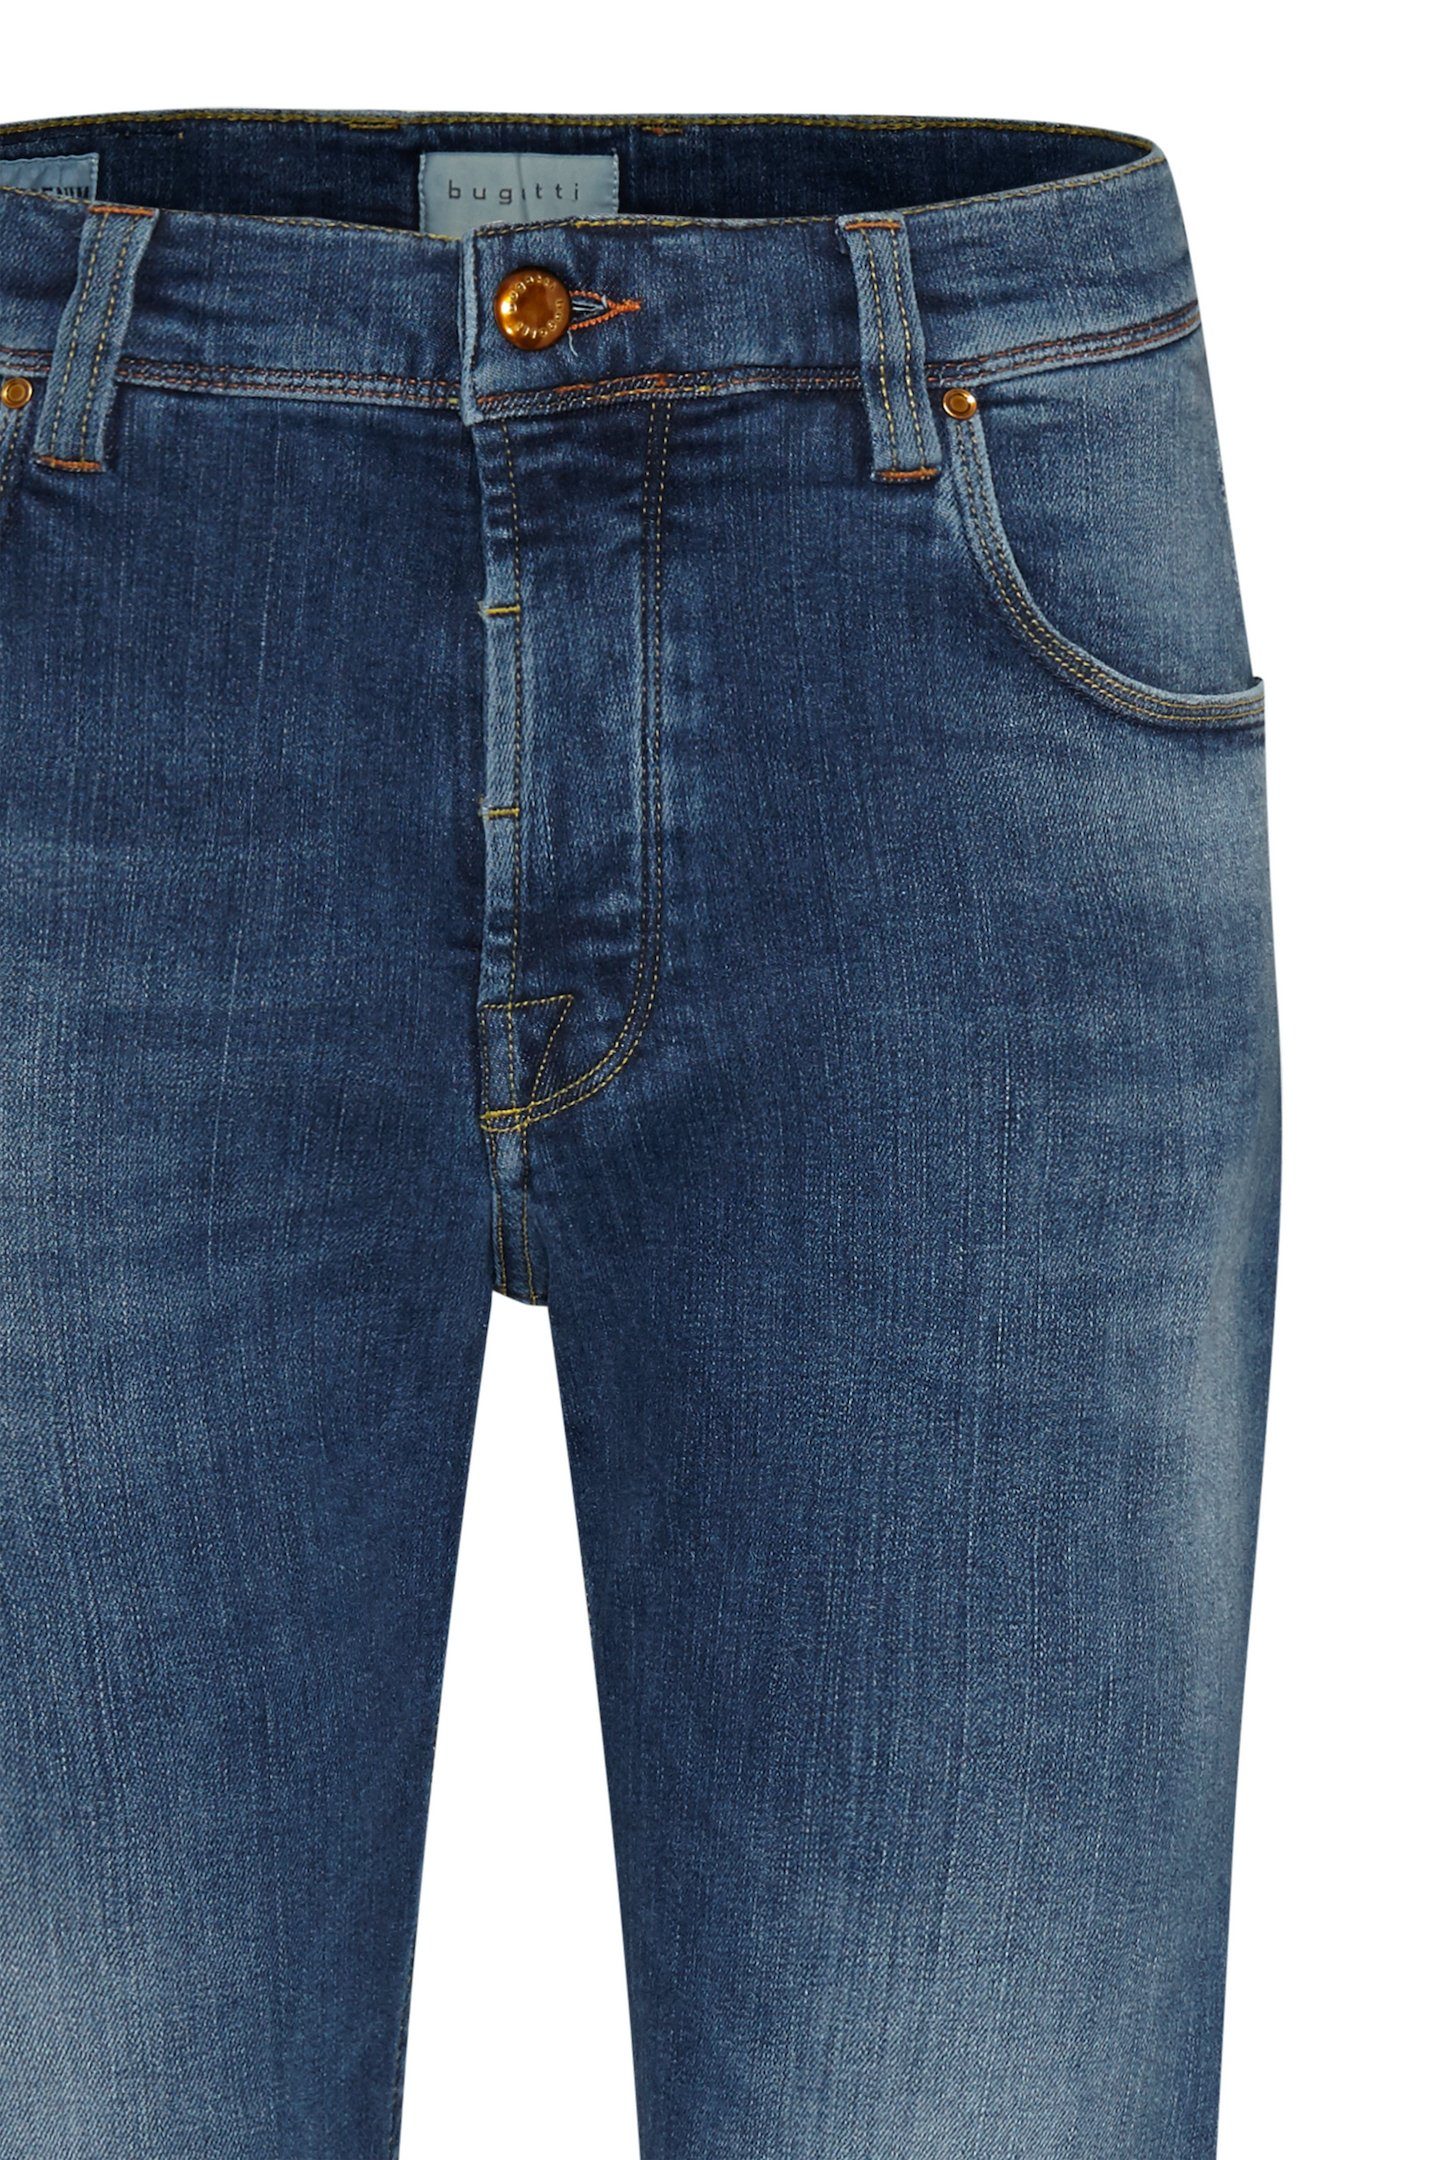 mit 5-Pocket-Jeans bugatti vintage Waschung